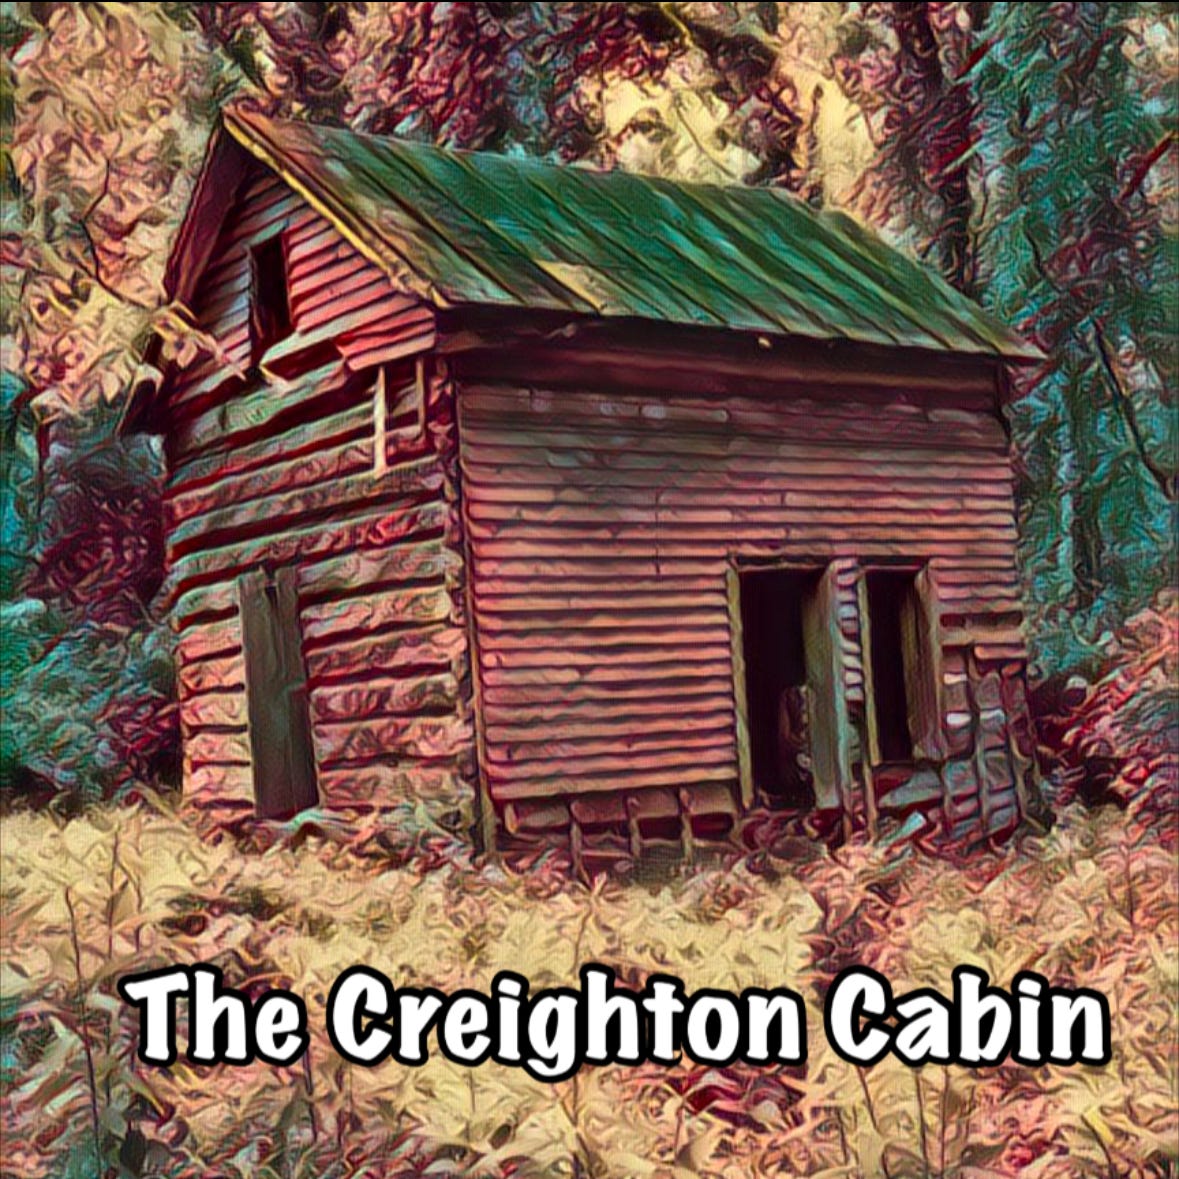 The Creighton Cabin